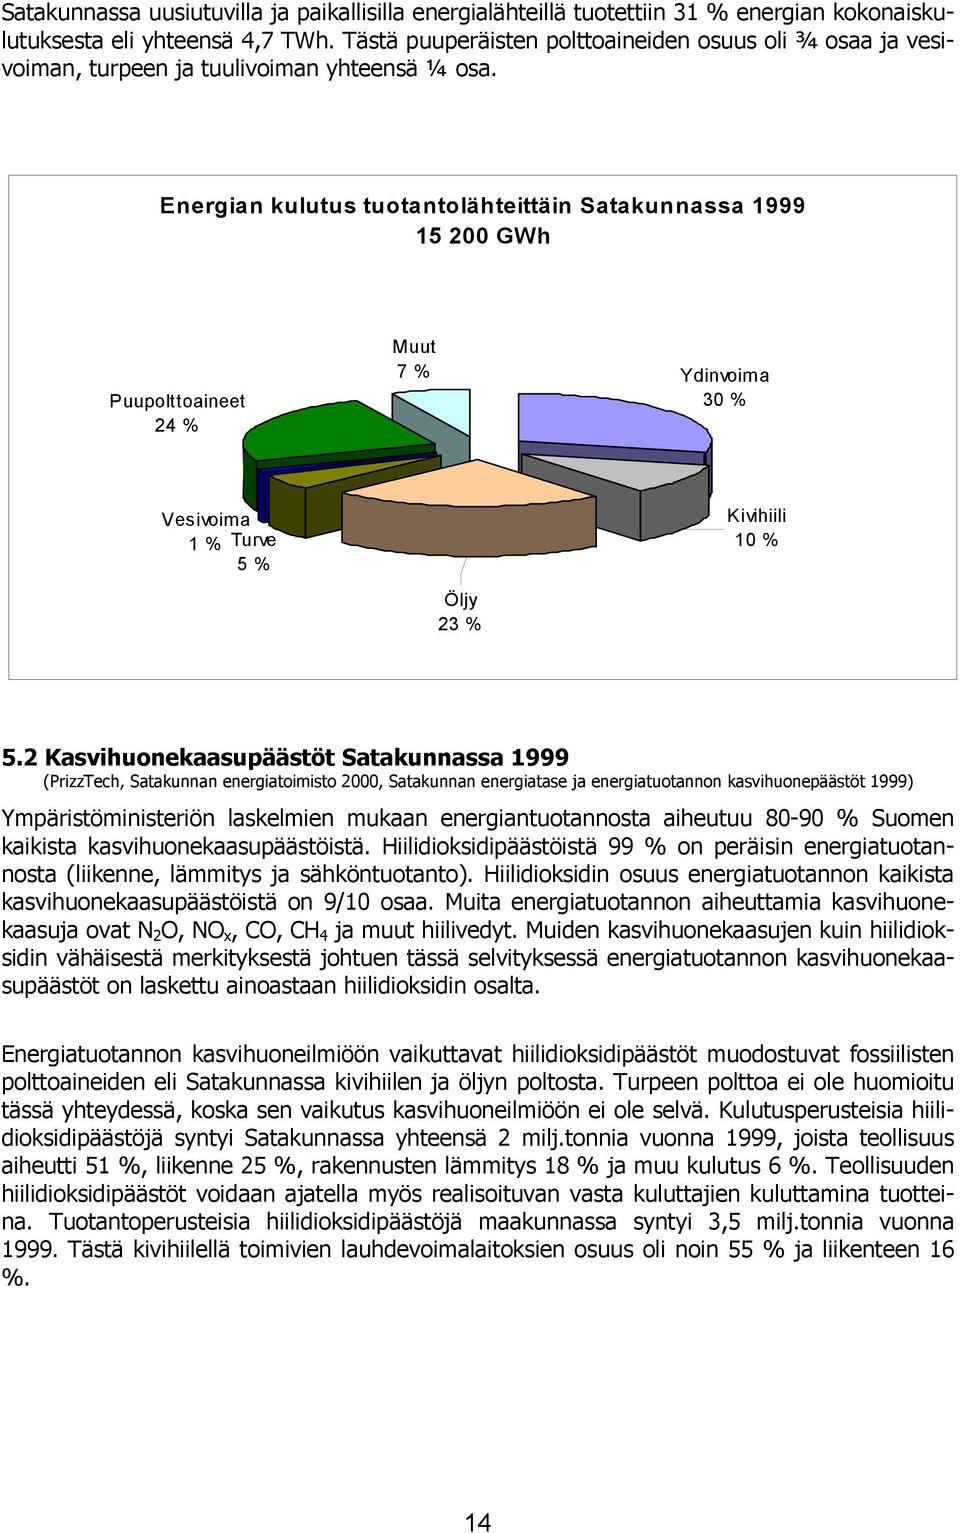 Energian kulutus tuotantolähteittäin Satakunnassa 1999 15 200 GWh Puupolttoaineet 24 % Muut 7 % Ydinvoima 30 % Vesivoima 1 % Turve 5 % Öljy 23 % Kivihiili 10 % 5.